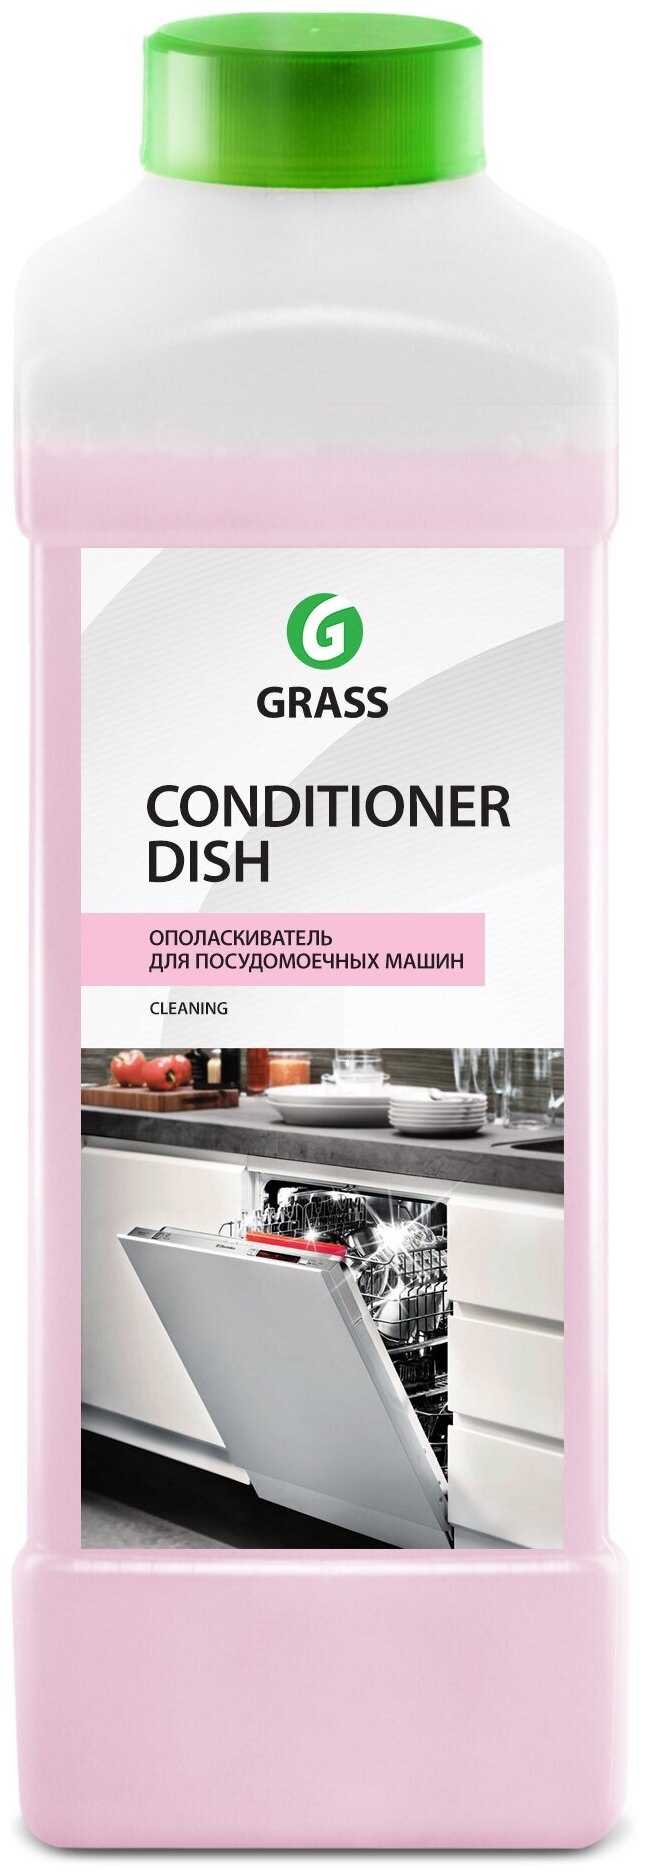 Grass Ополаскиватель для посудомоечных машин Conditioner Dish, канистра 1 л.